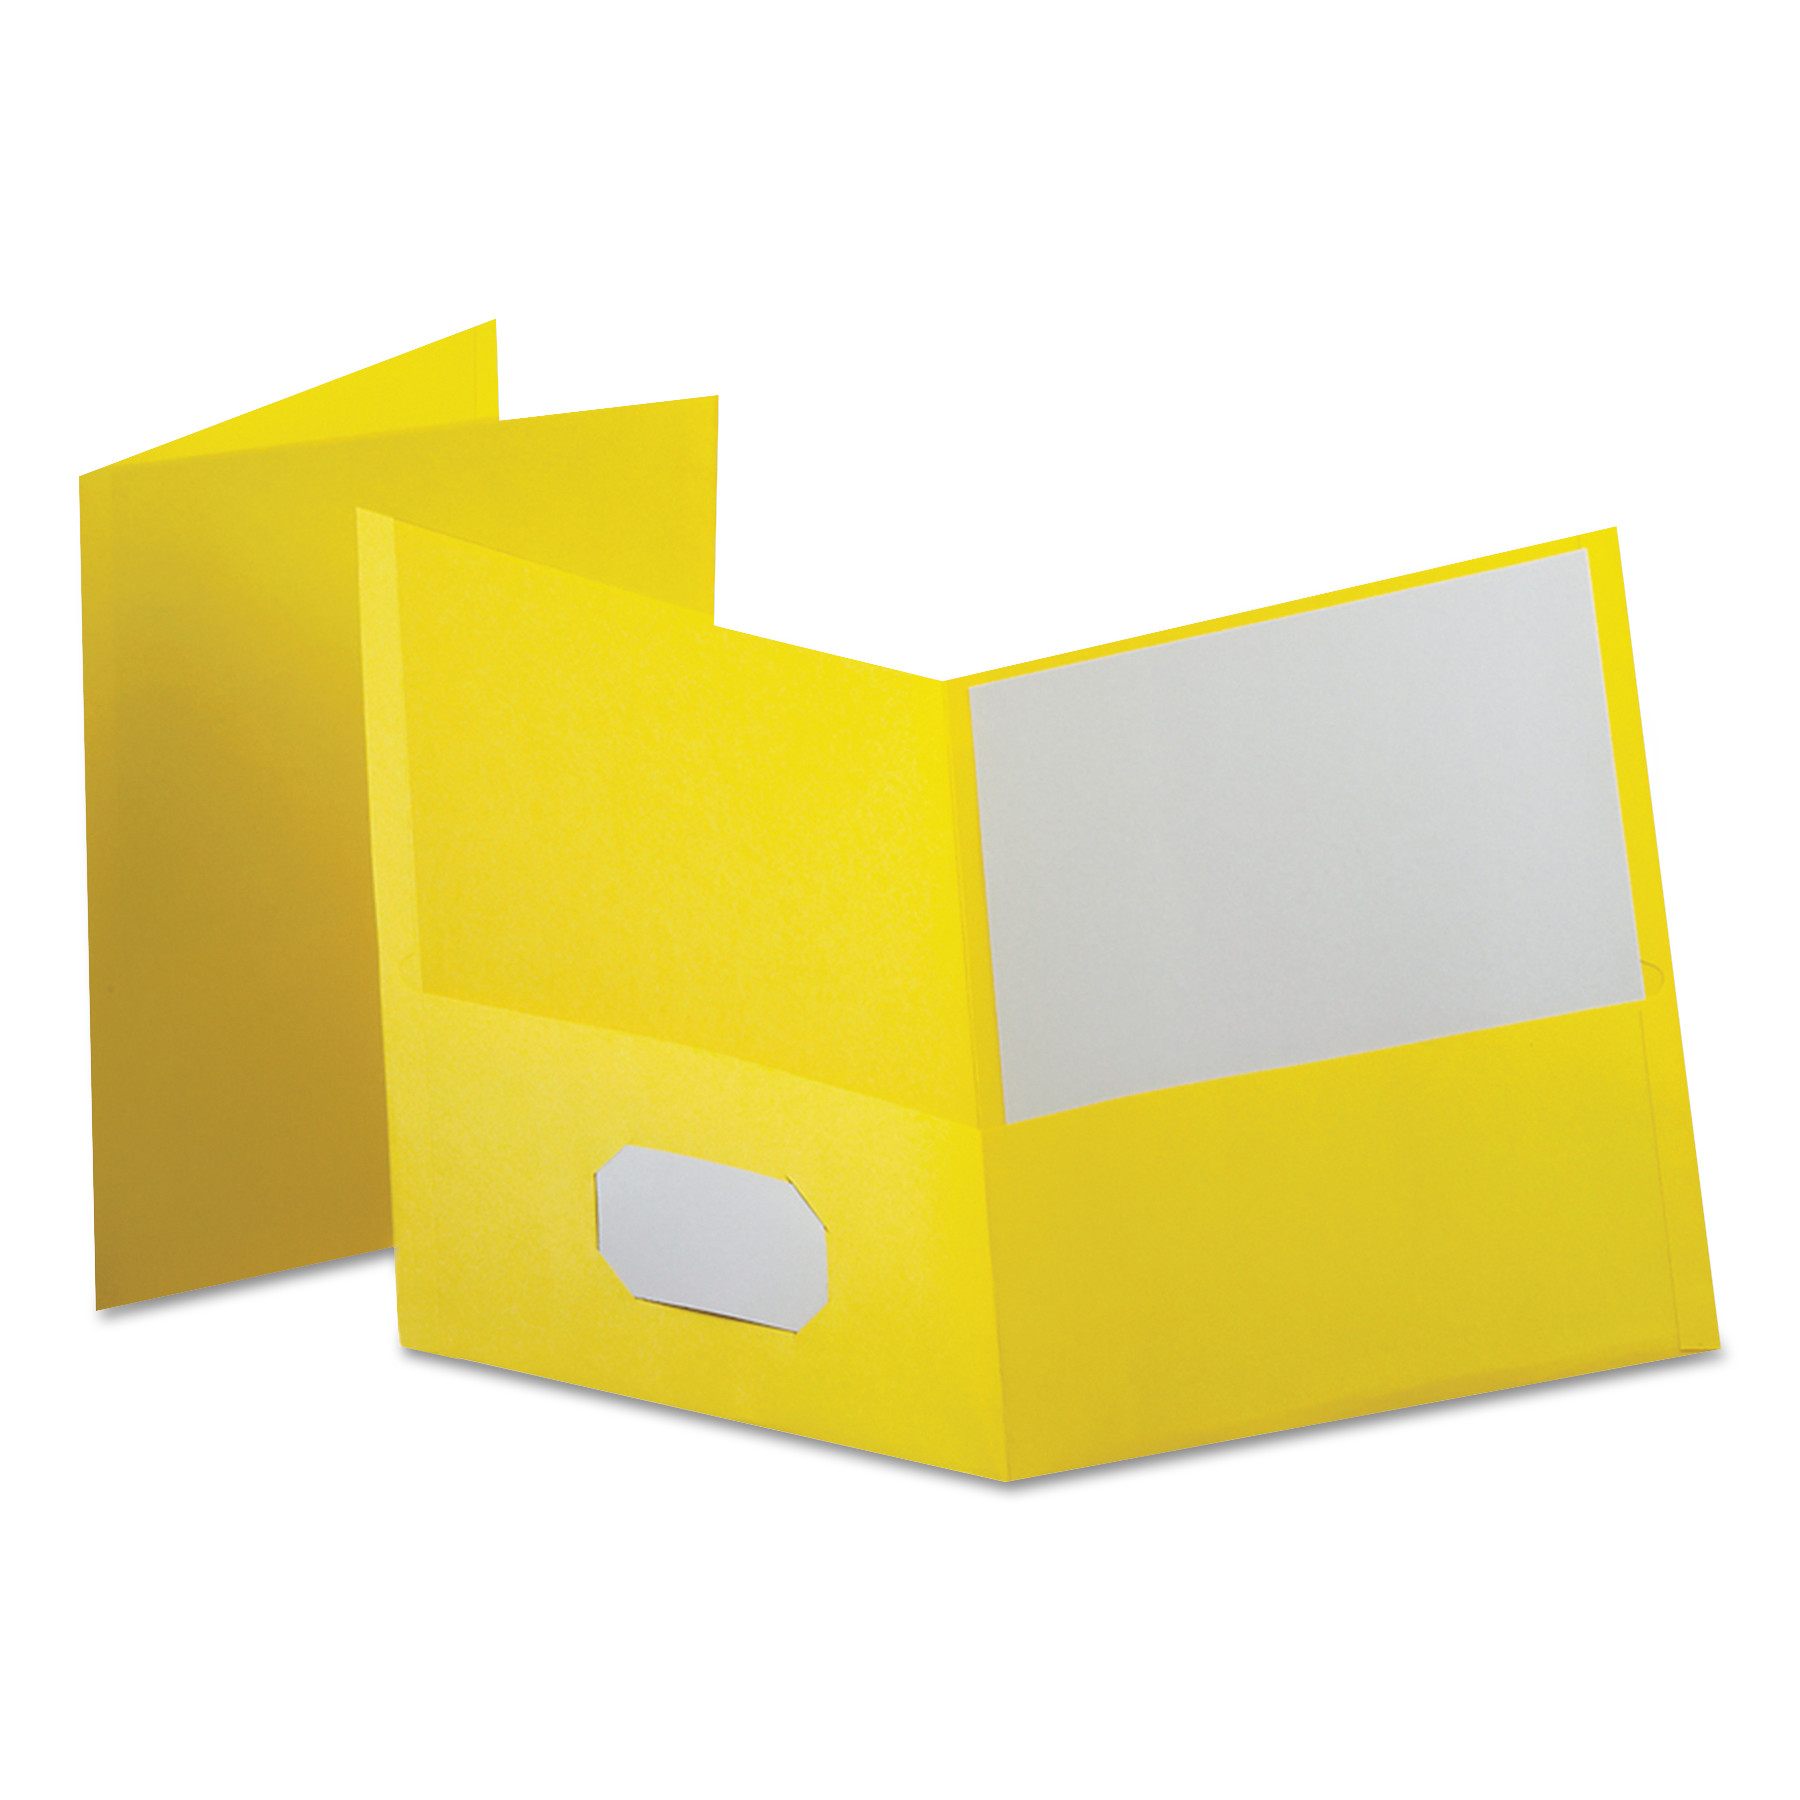 Leatherette Two Pocket Portfolio, 8 1/2 x 11, Yellow, 10/PK